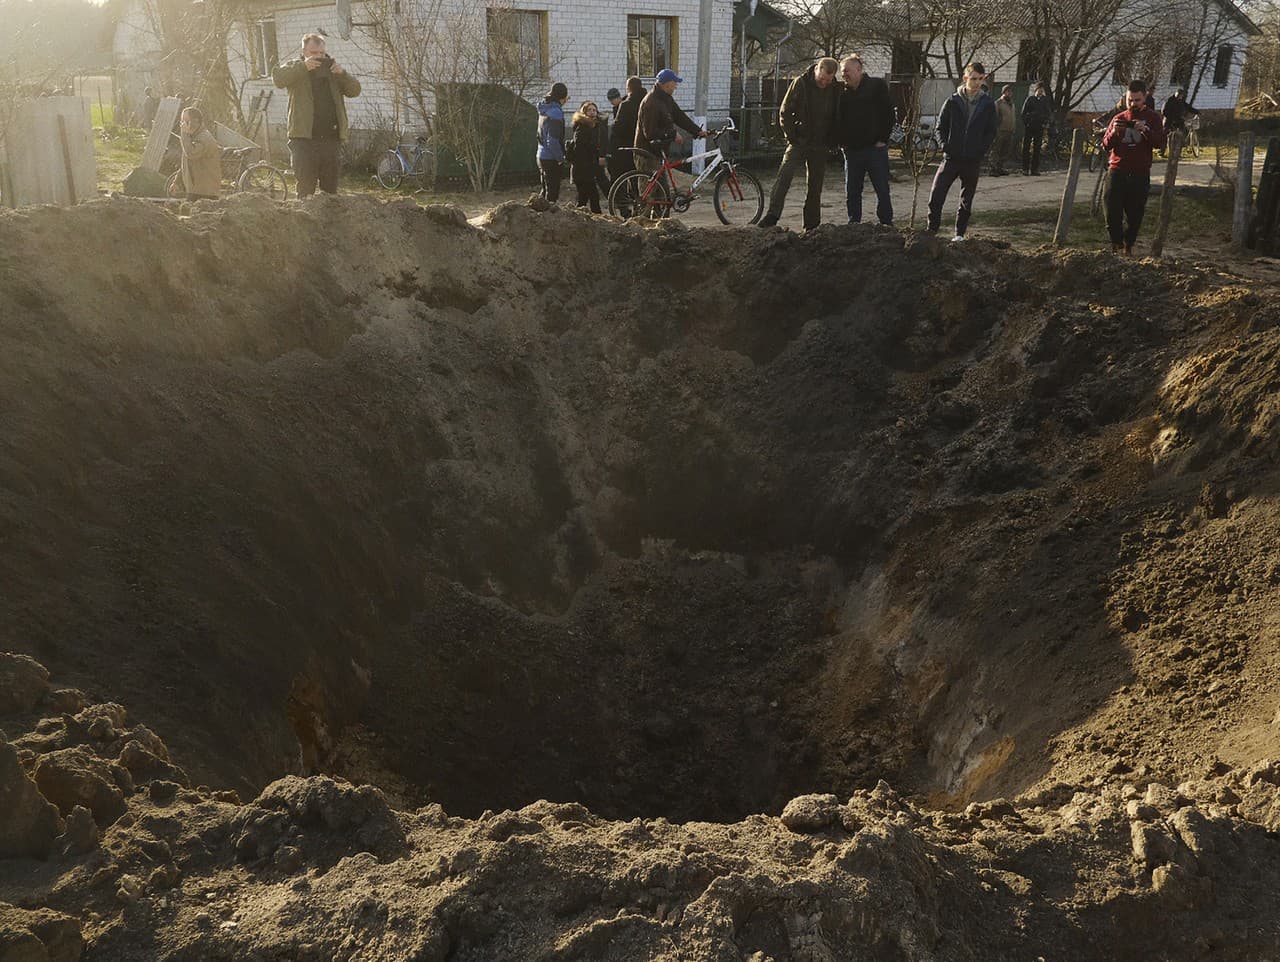 Ľudia sa pozerajú na kráter po výbuchu v dedine Horodnya